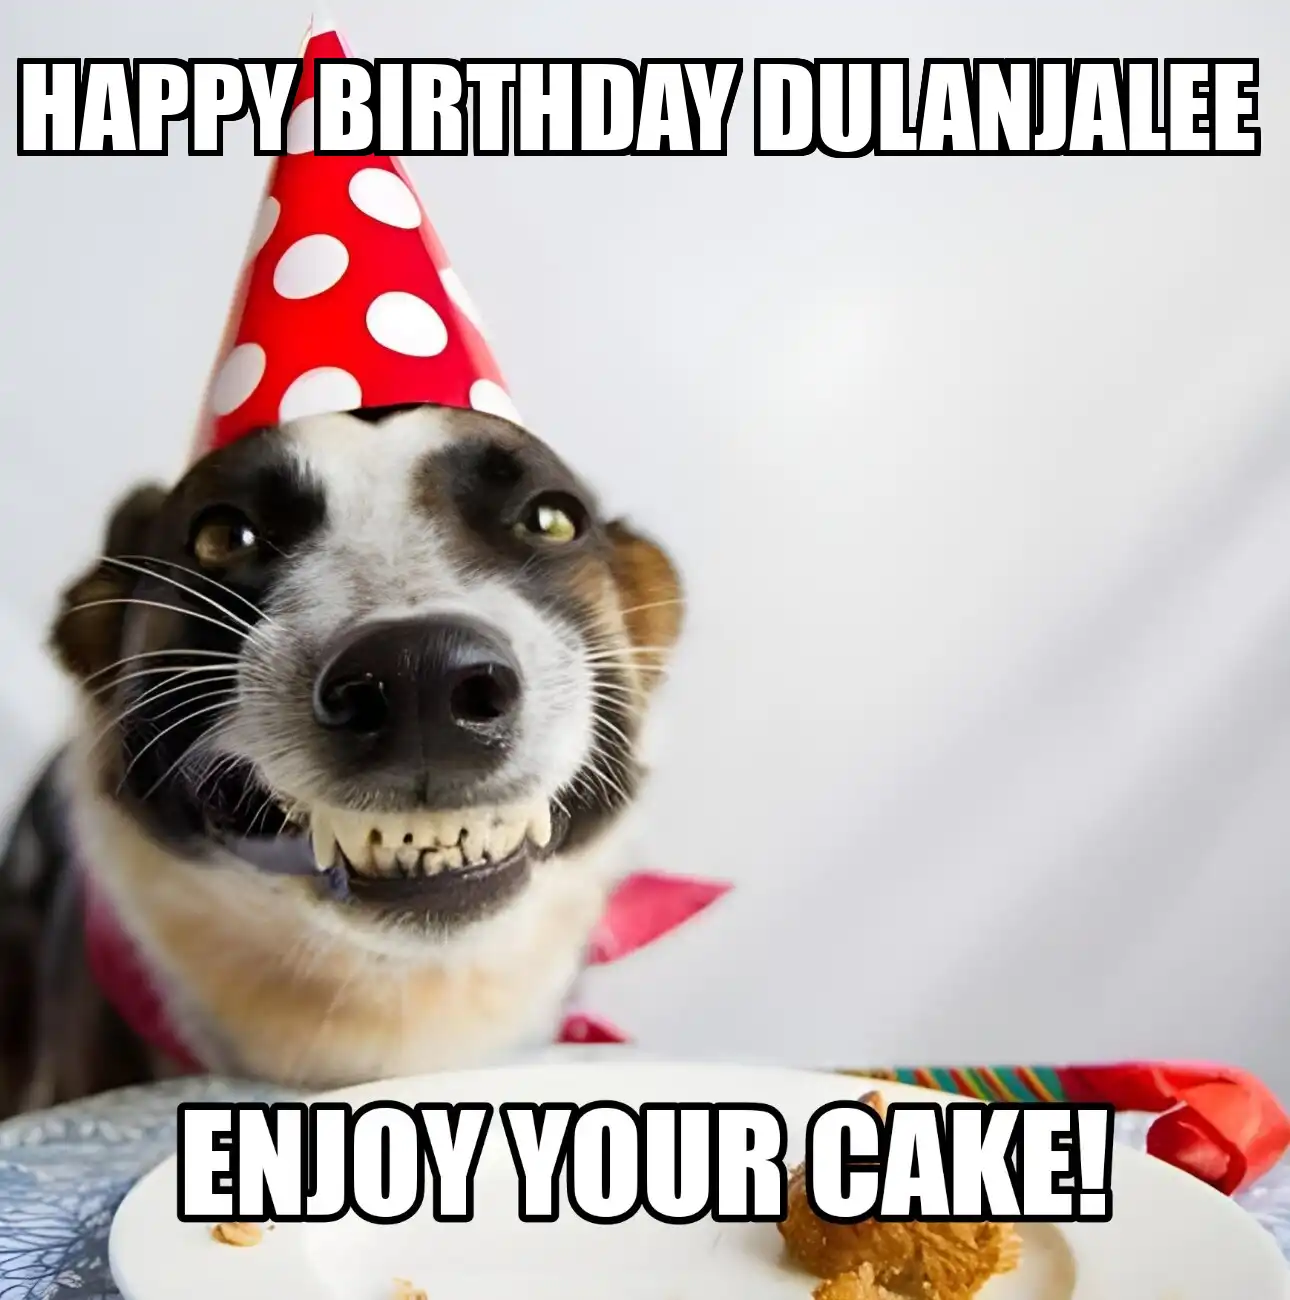 Happy Birthday Dulanjalee Enjoy Your Cake Dog Meme